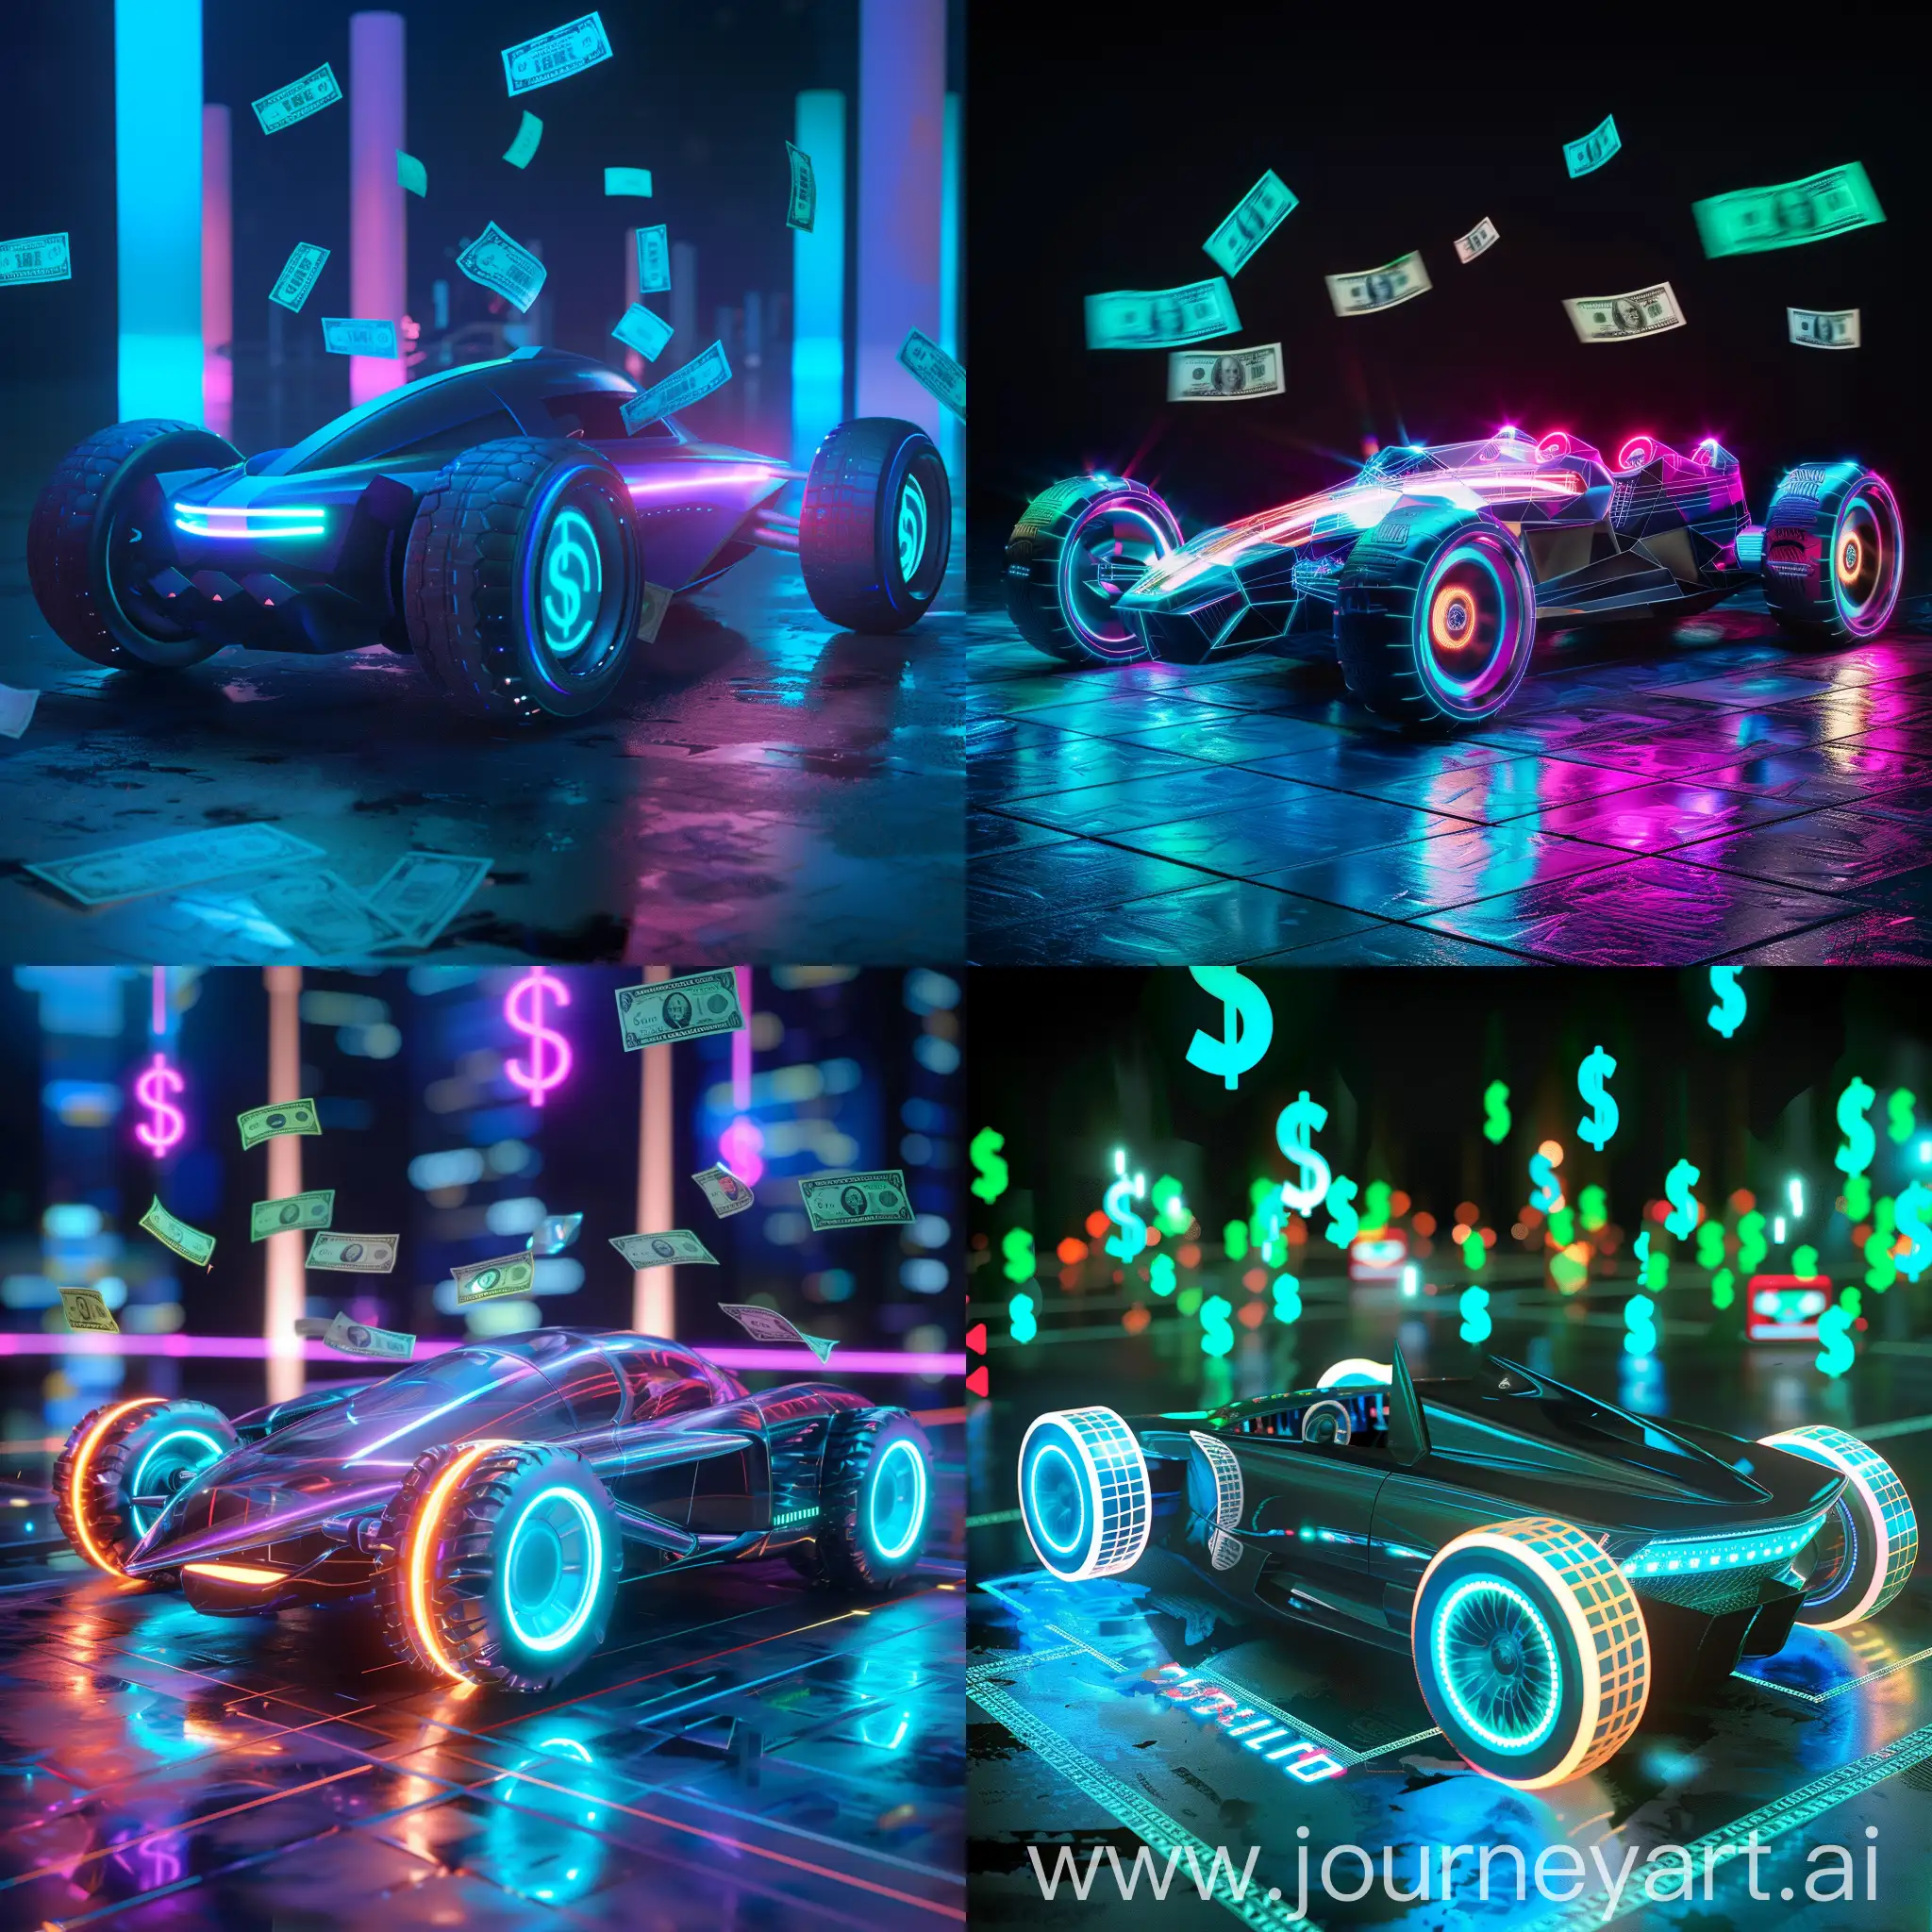 Futuristic-RGB-Car-with-Floating-Dollar-Signs